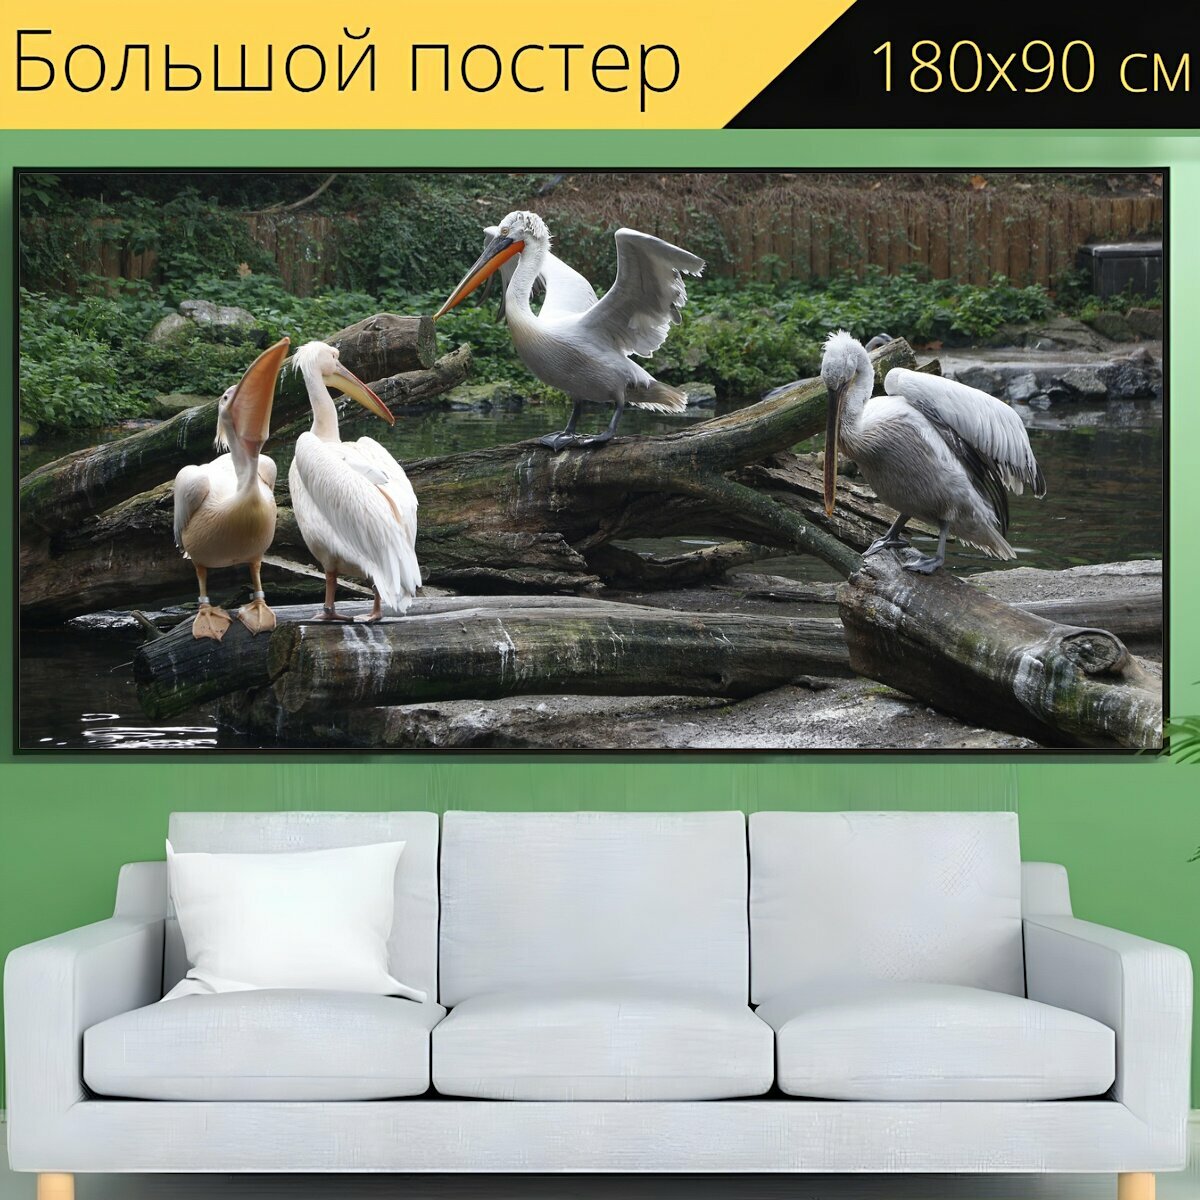 Большой постер "Птица, птицы, зоопарк" 180 x 90 см. для интерьера